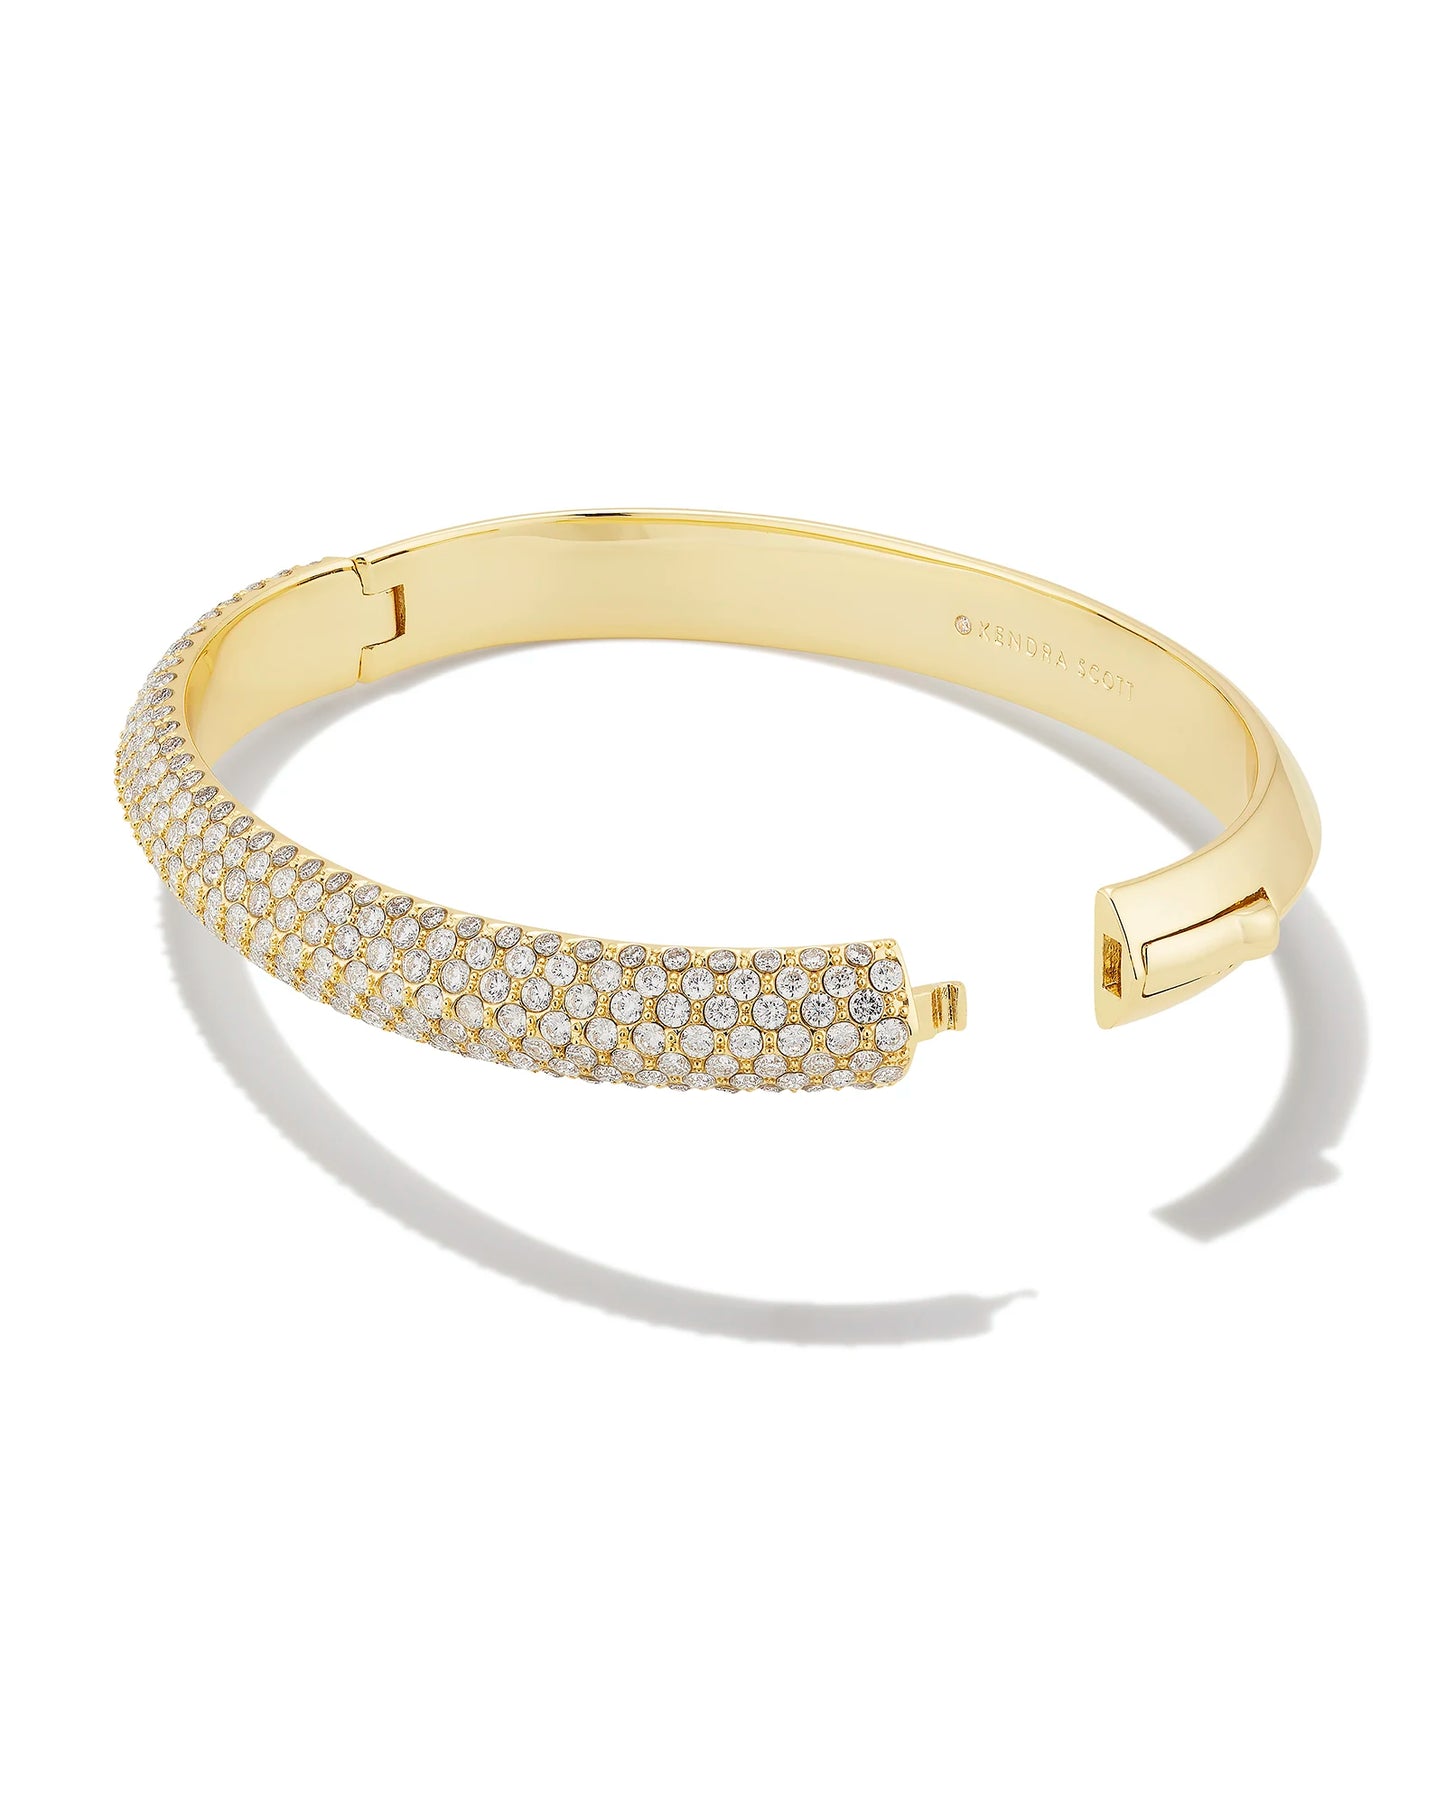 Kendra Scott Mikki Pave Bangle Bracelet Gold White CZ M/L-Bracelets-Kendra Scott-B00120GLD-The Twisted Chandelier